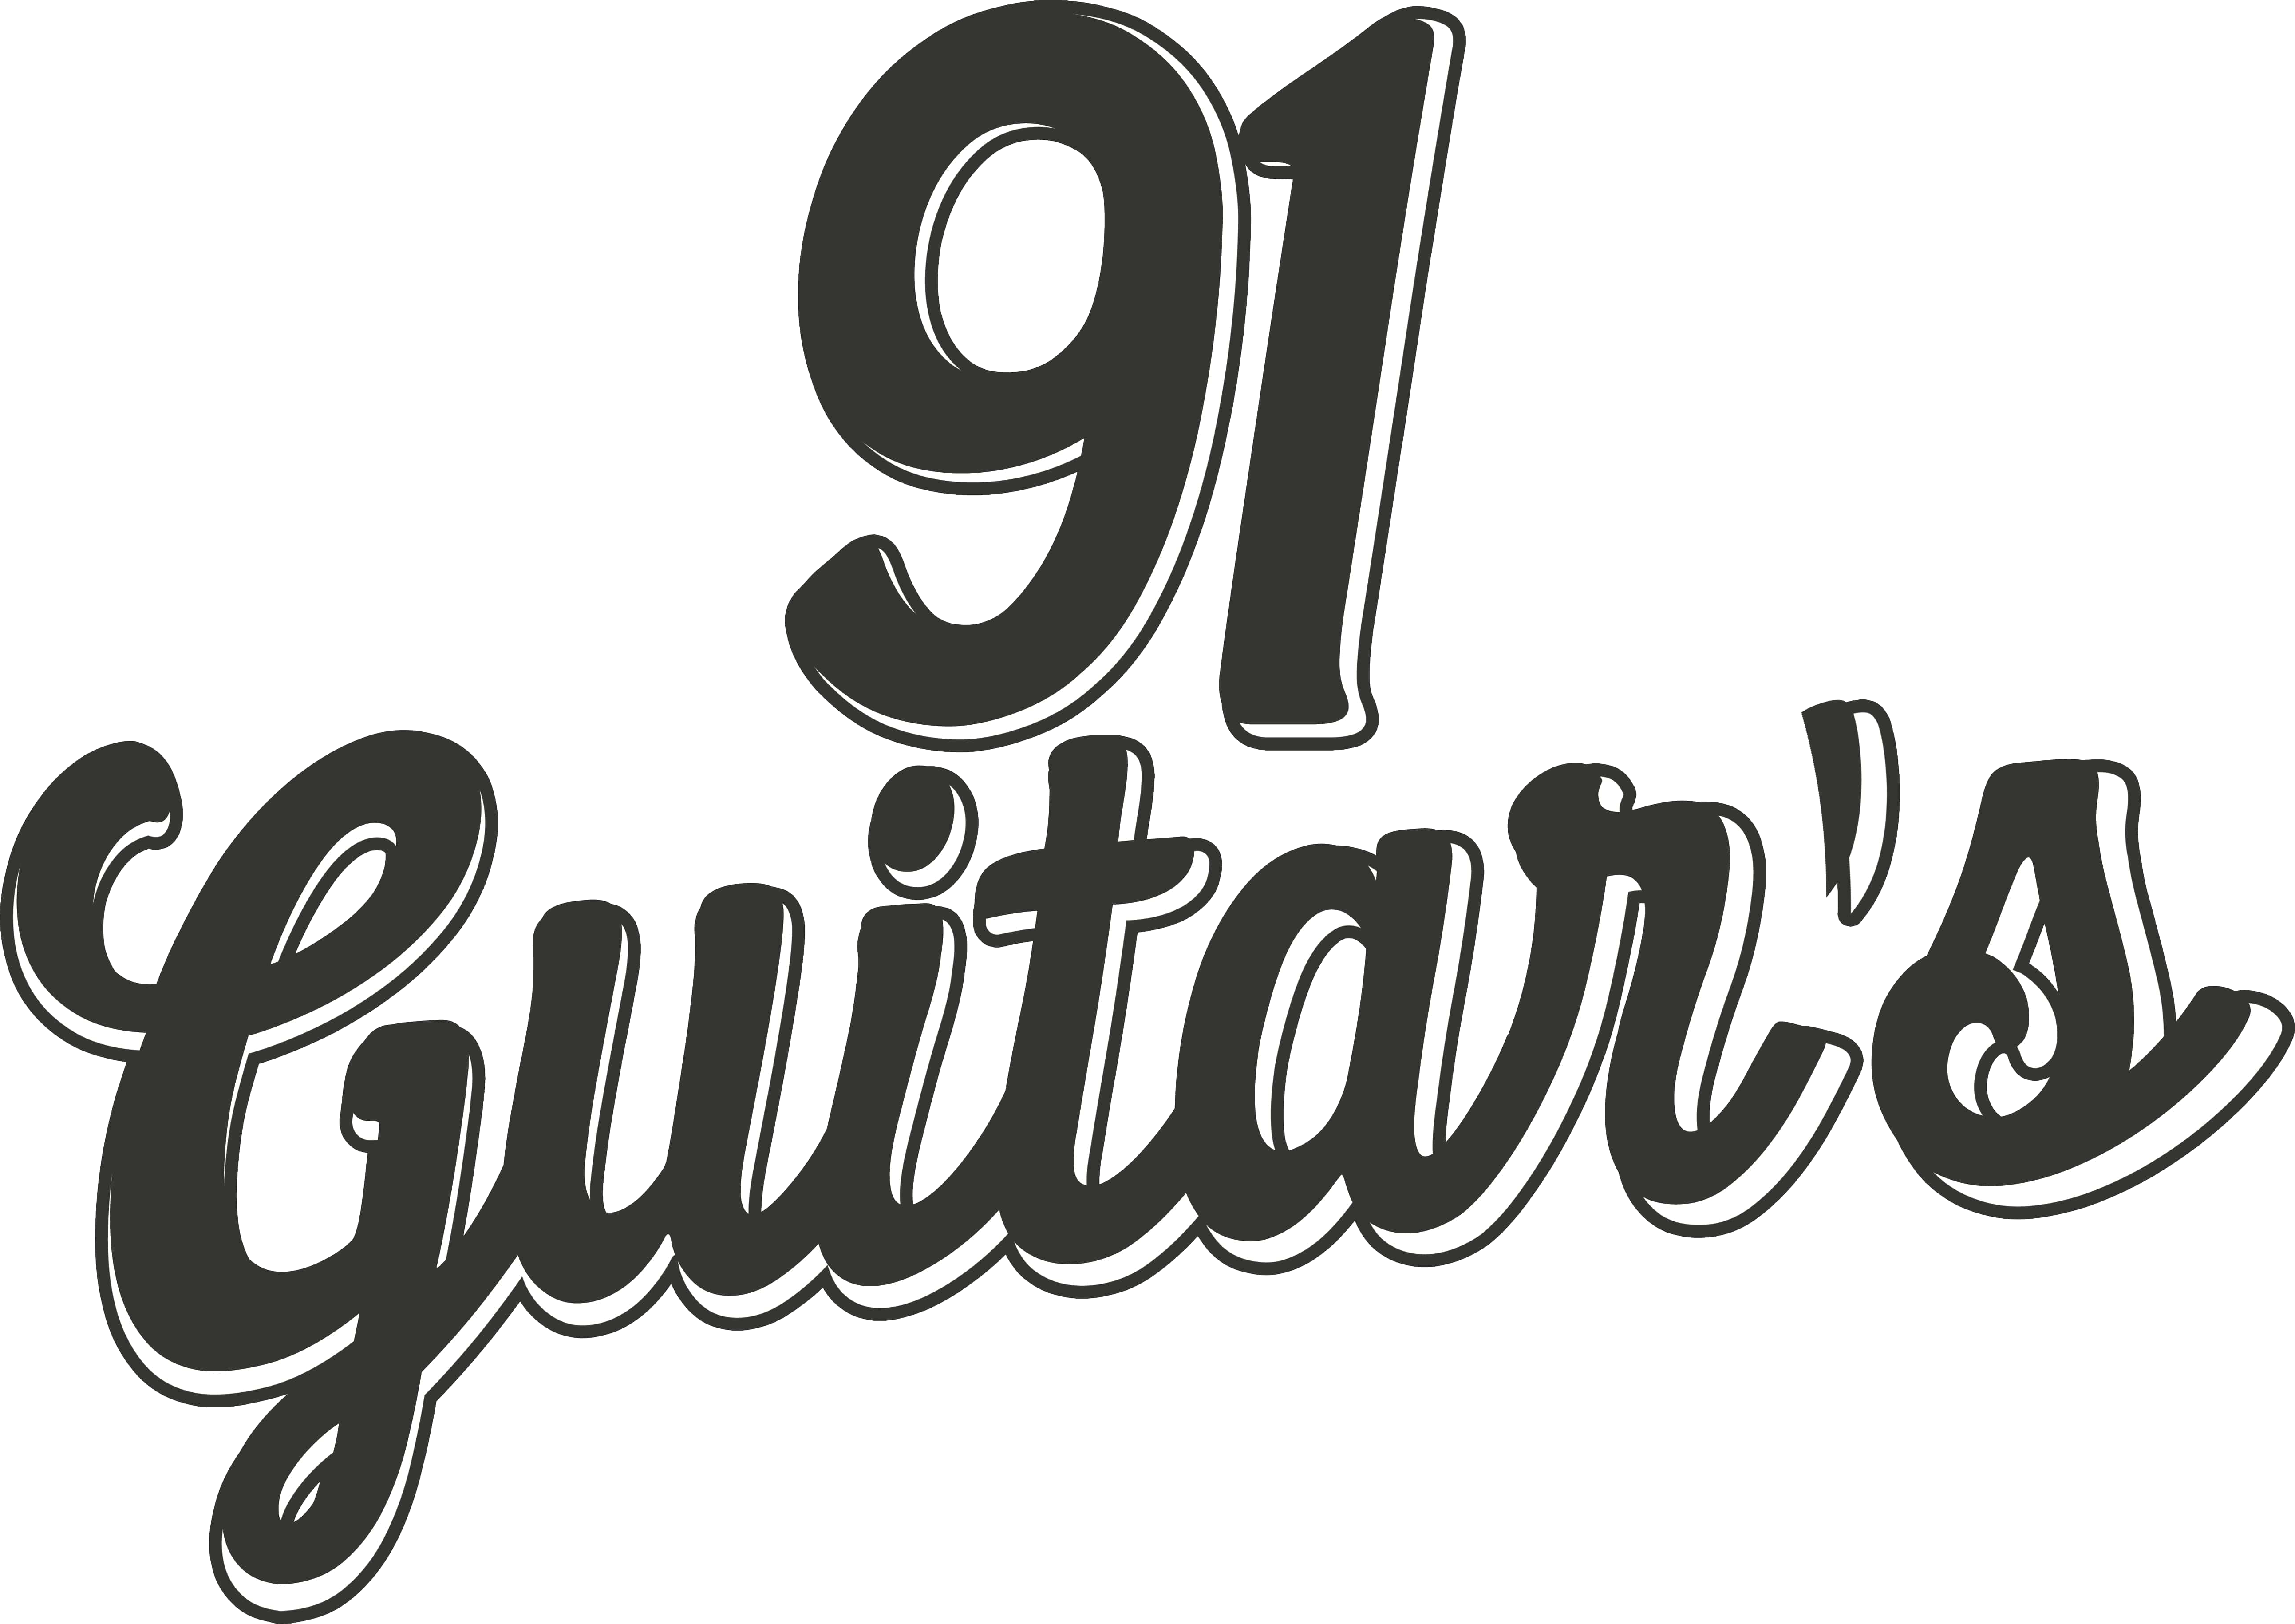 91 Guitar's Logo